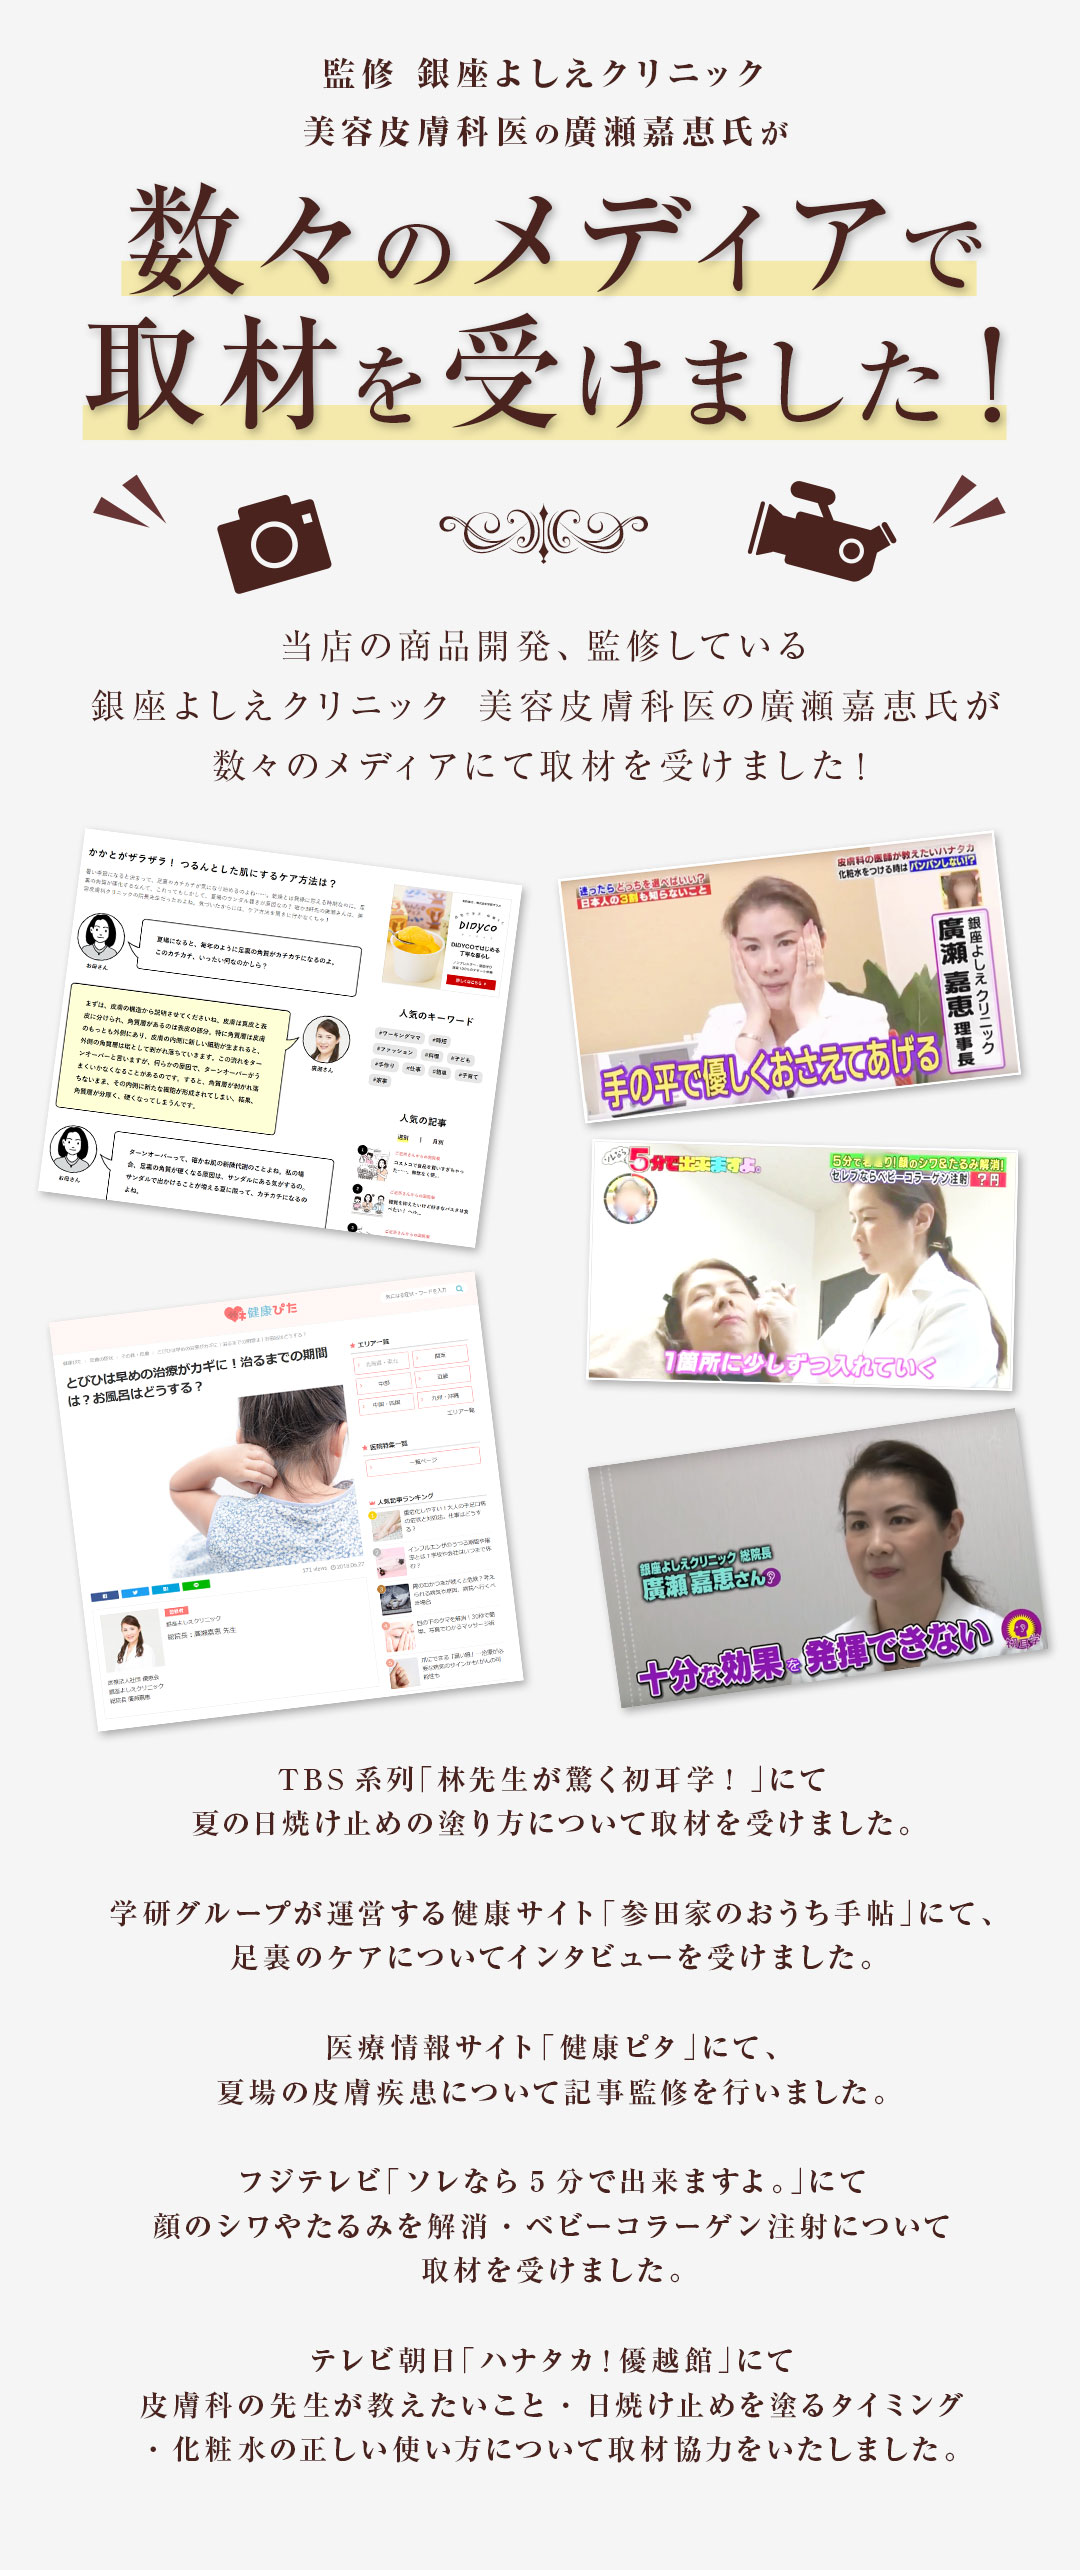 監修 銀座よしえクリニック 美容皮膚科医の広瀬嘉恵氏が数々のメディアで取材をうけました！